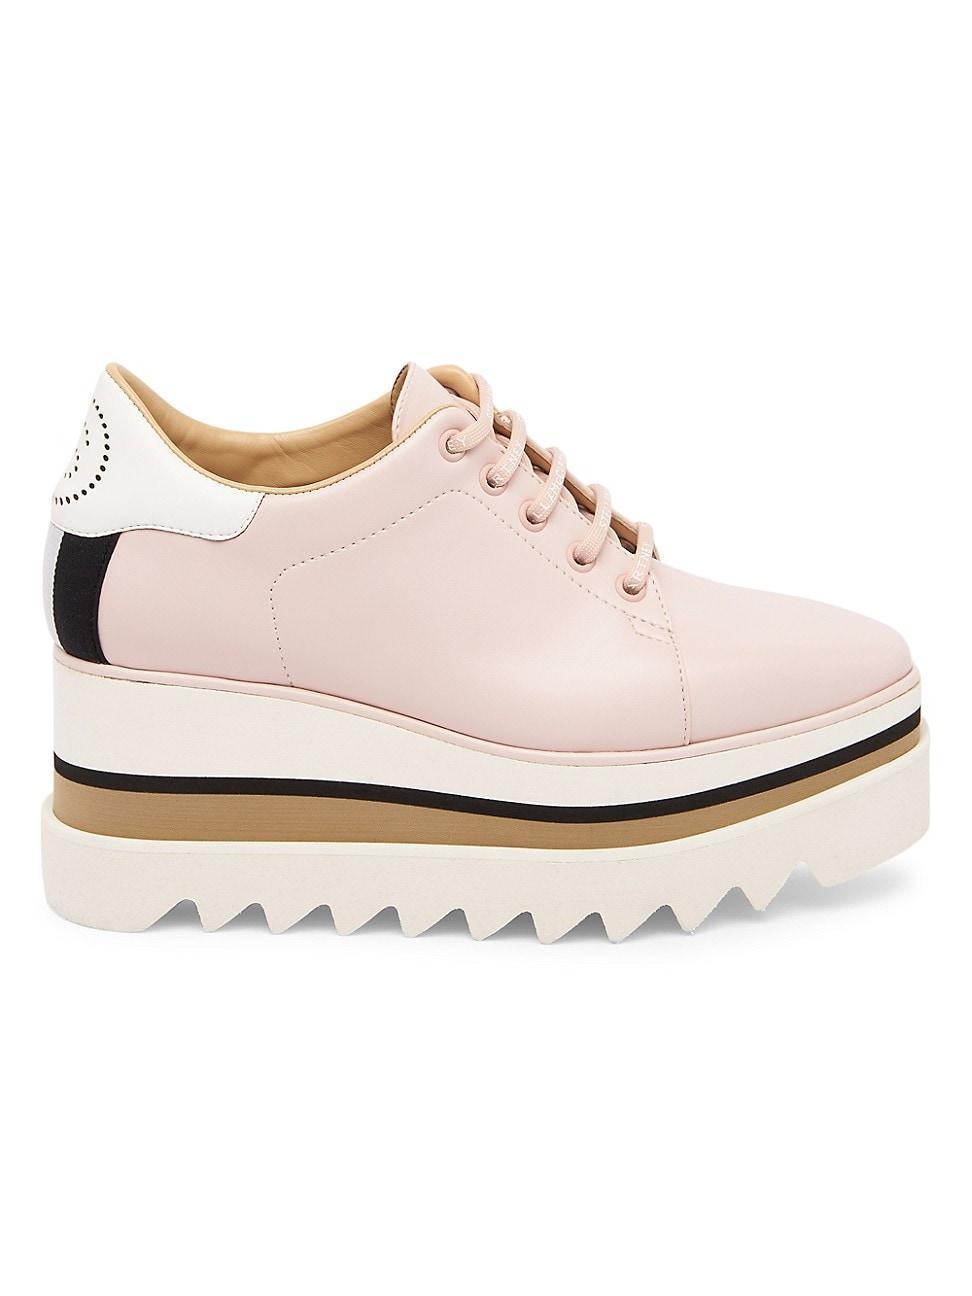 Stella McCartney Sneak-Elyse Platform Wedge Sneaker Product Image